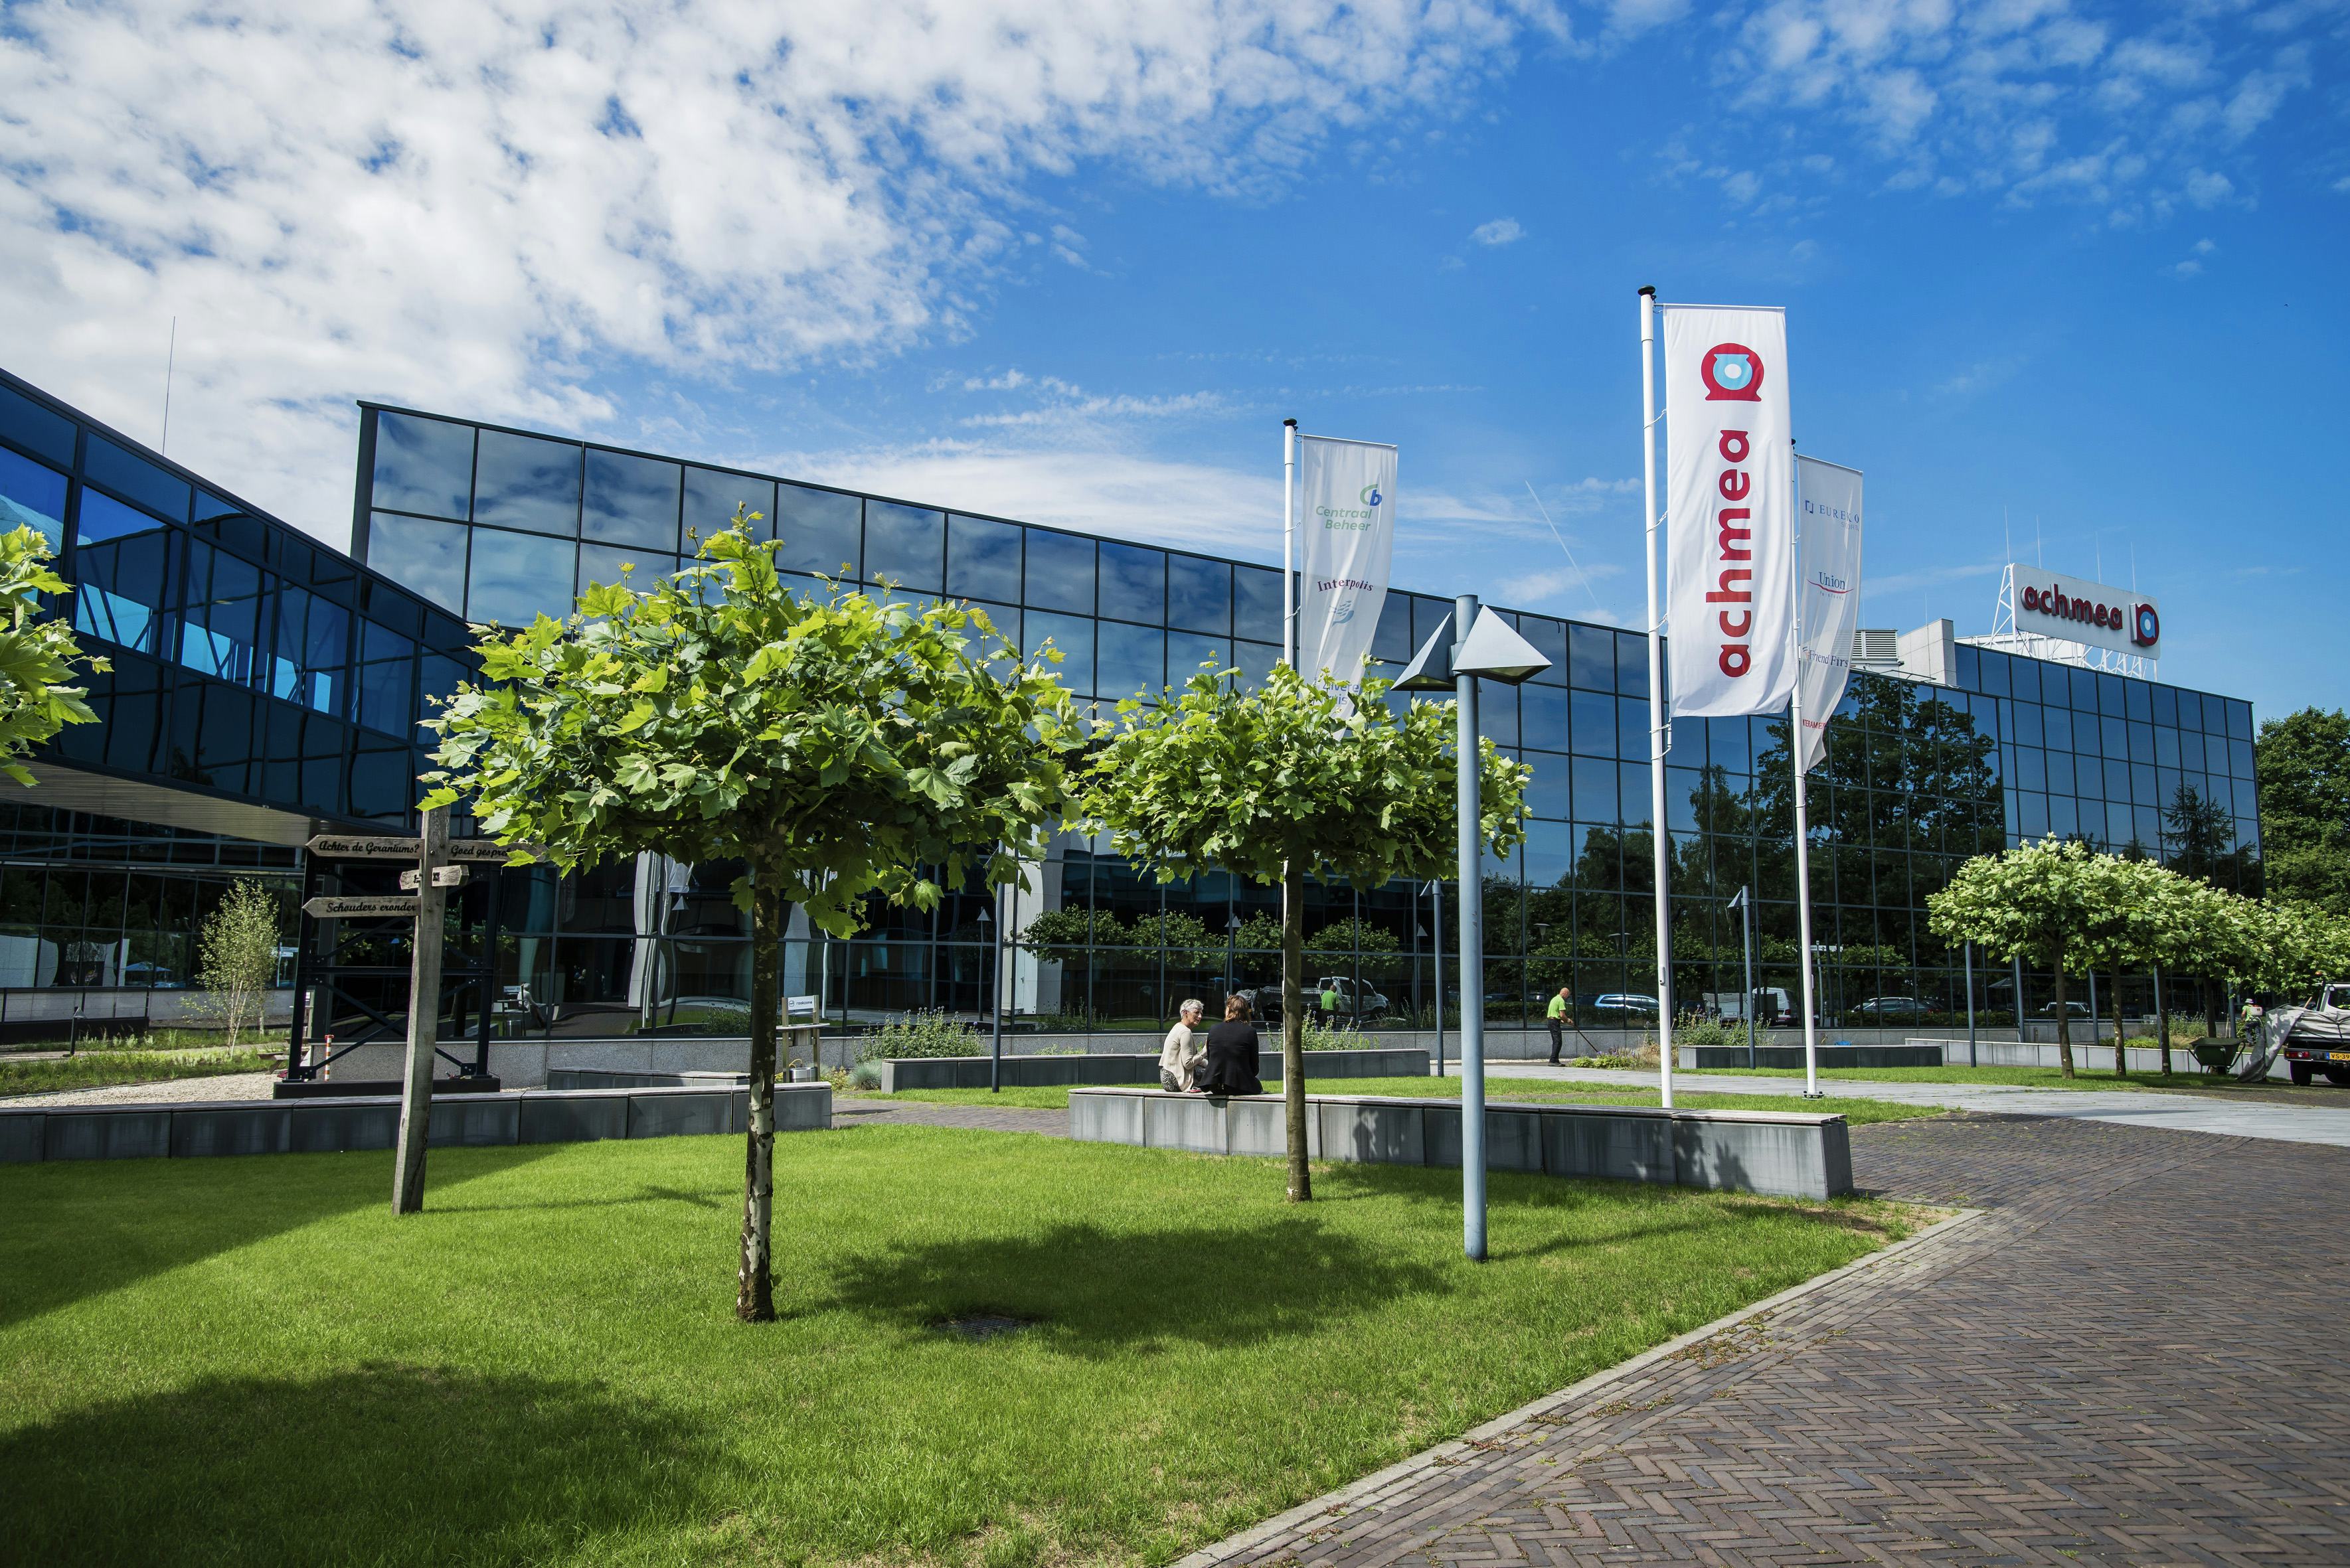 Achmea stopt met operationele hypotheekactiviteiten vanuit Tilburg